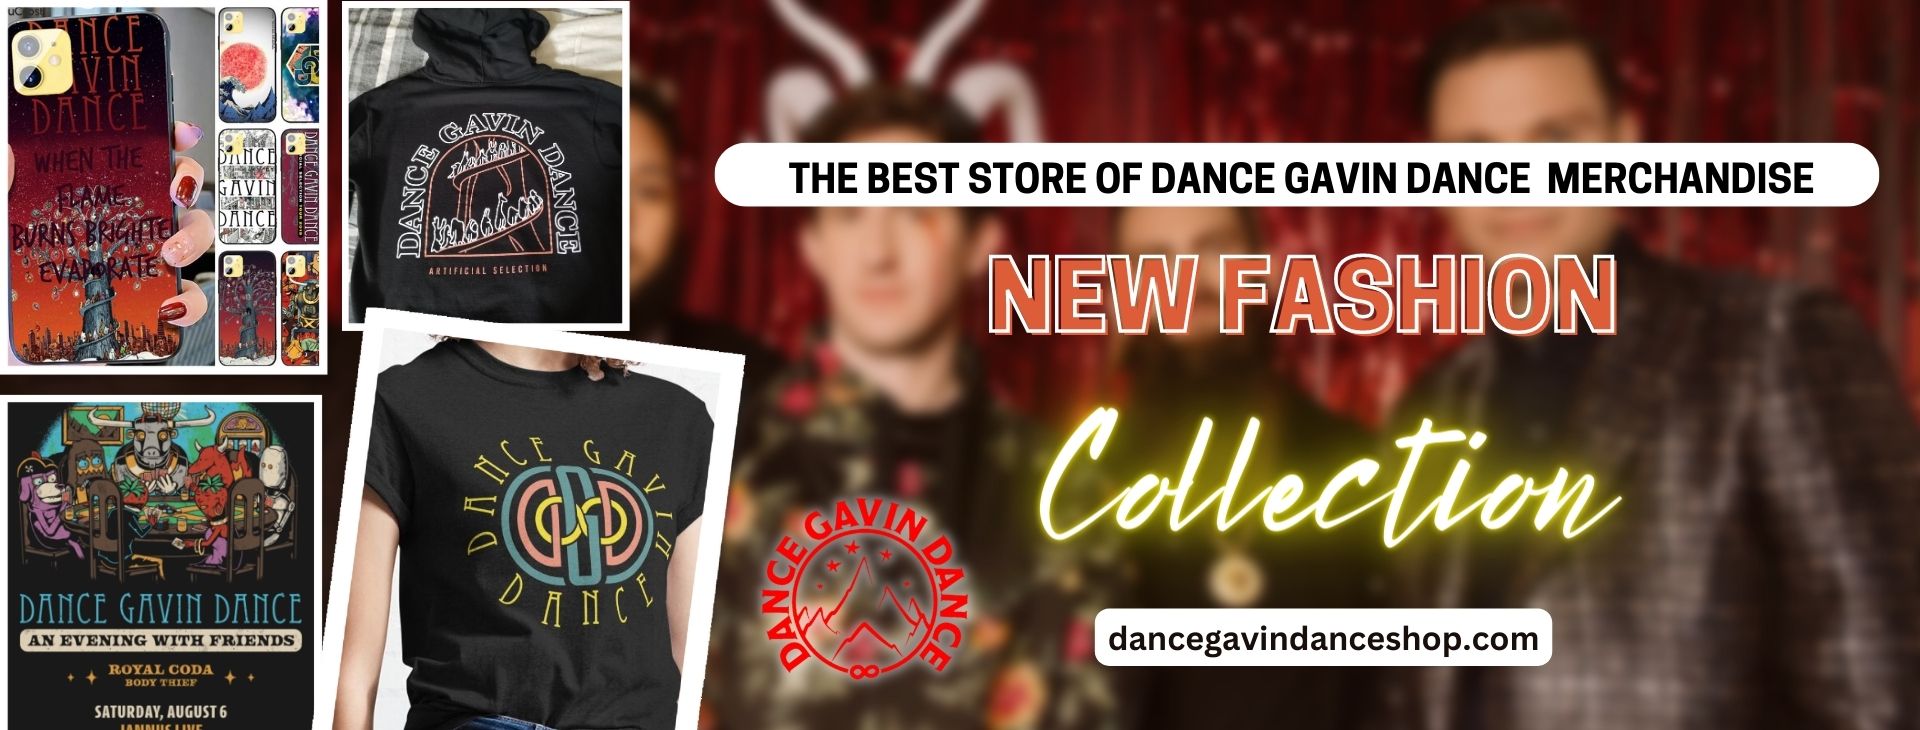 No edit dance gavin dance .shop banner 1920x730px 1 - Dance Gavin Dance Shop